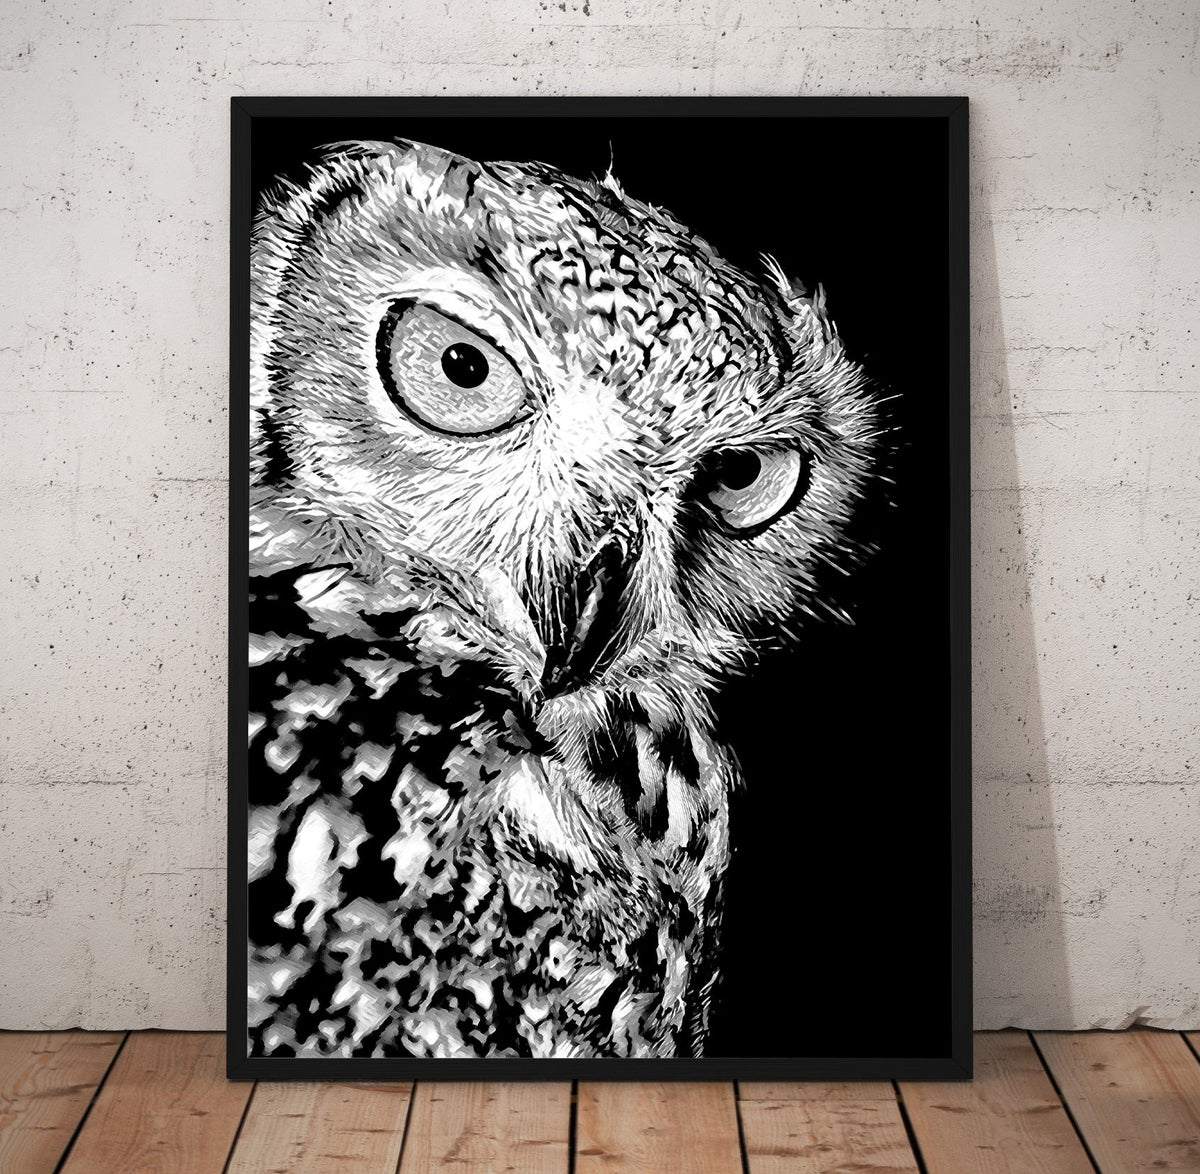 B/W Owl Prints | Far Out Art 